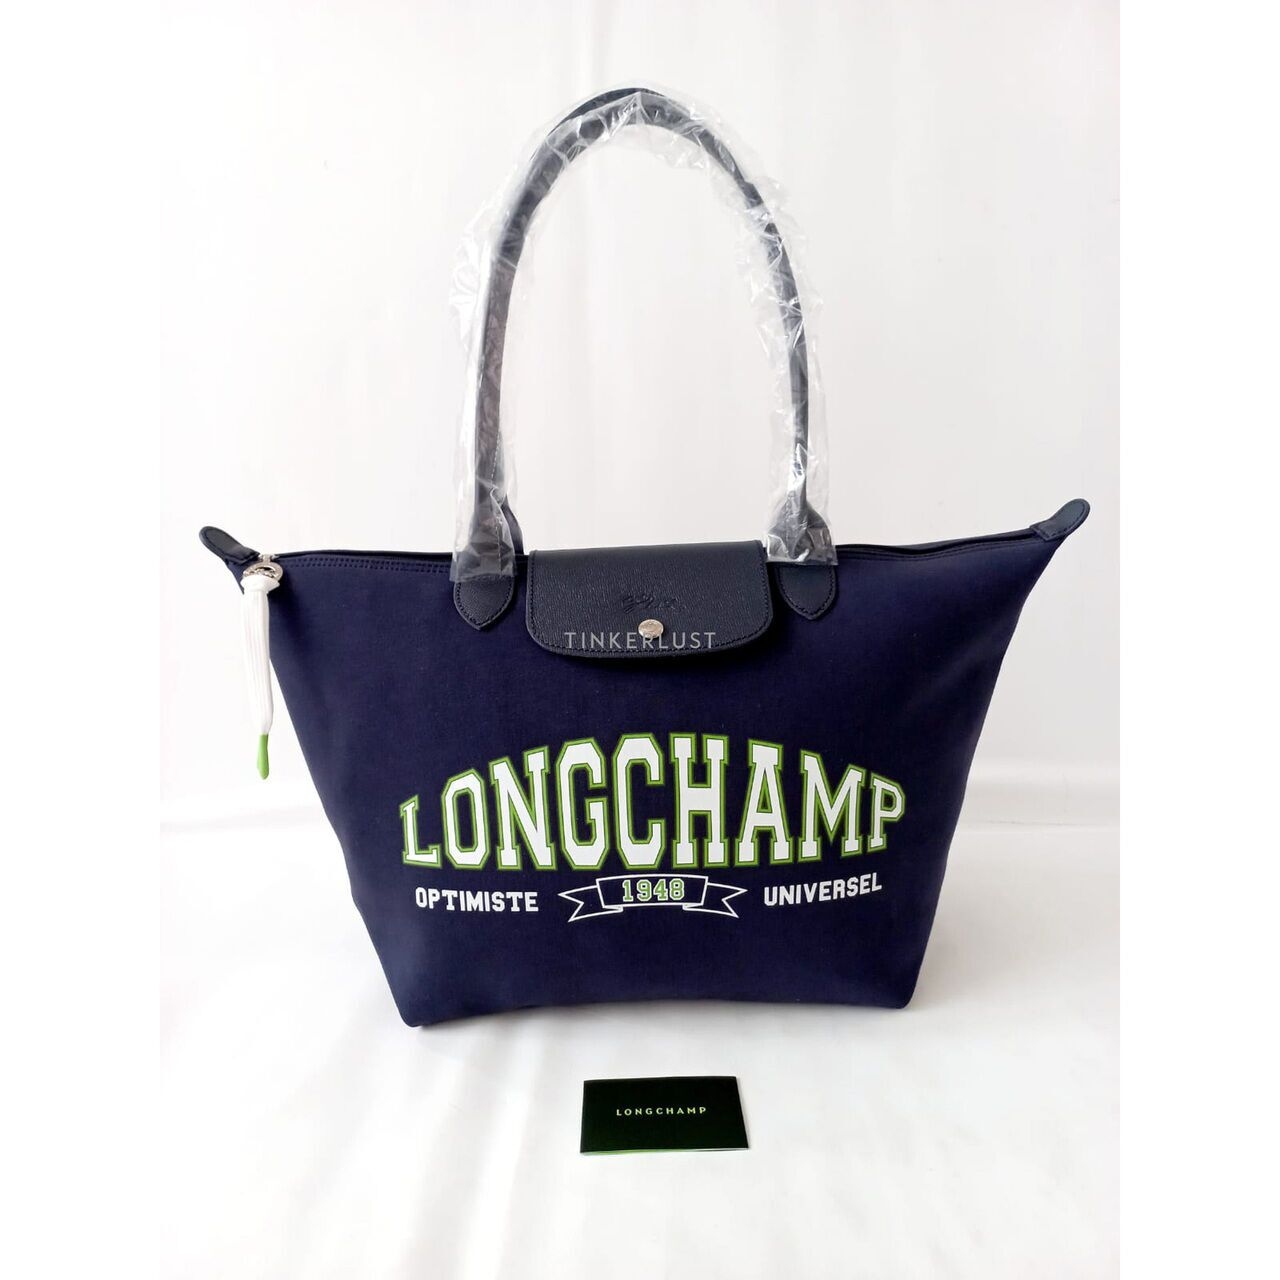 Longchamp Le Pliage University Small Long Handle Navy Tote Bag